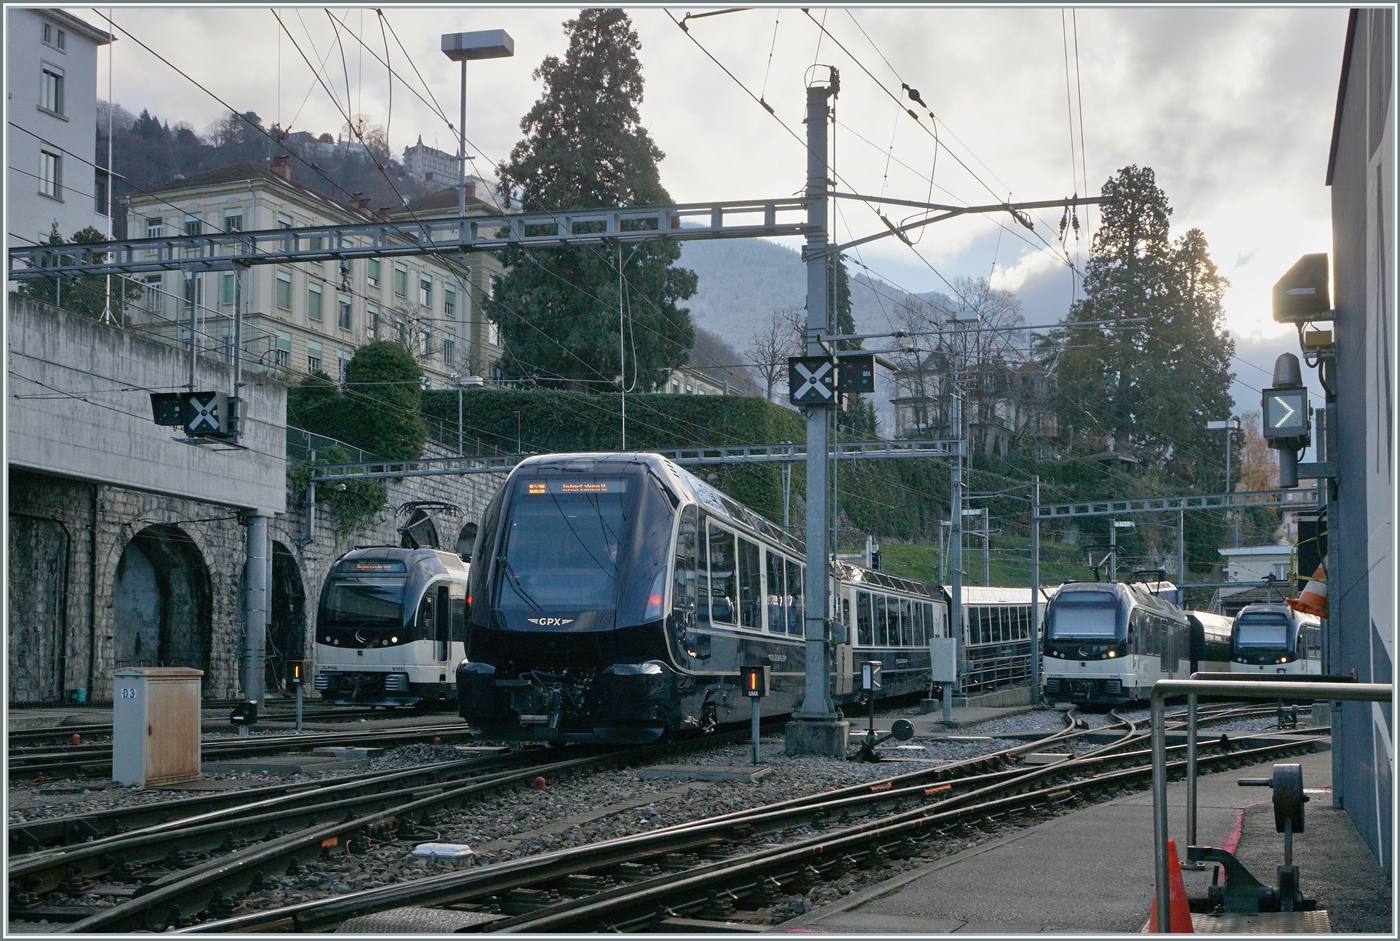 Der allererste planmässige Spurwechelzug GoldenPass Express verlässt Montreux in Richtung Interlaken Ost.

11. Dez 2022